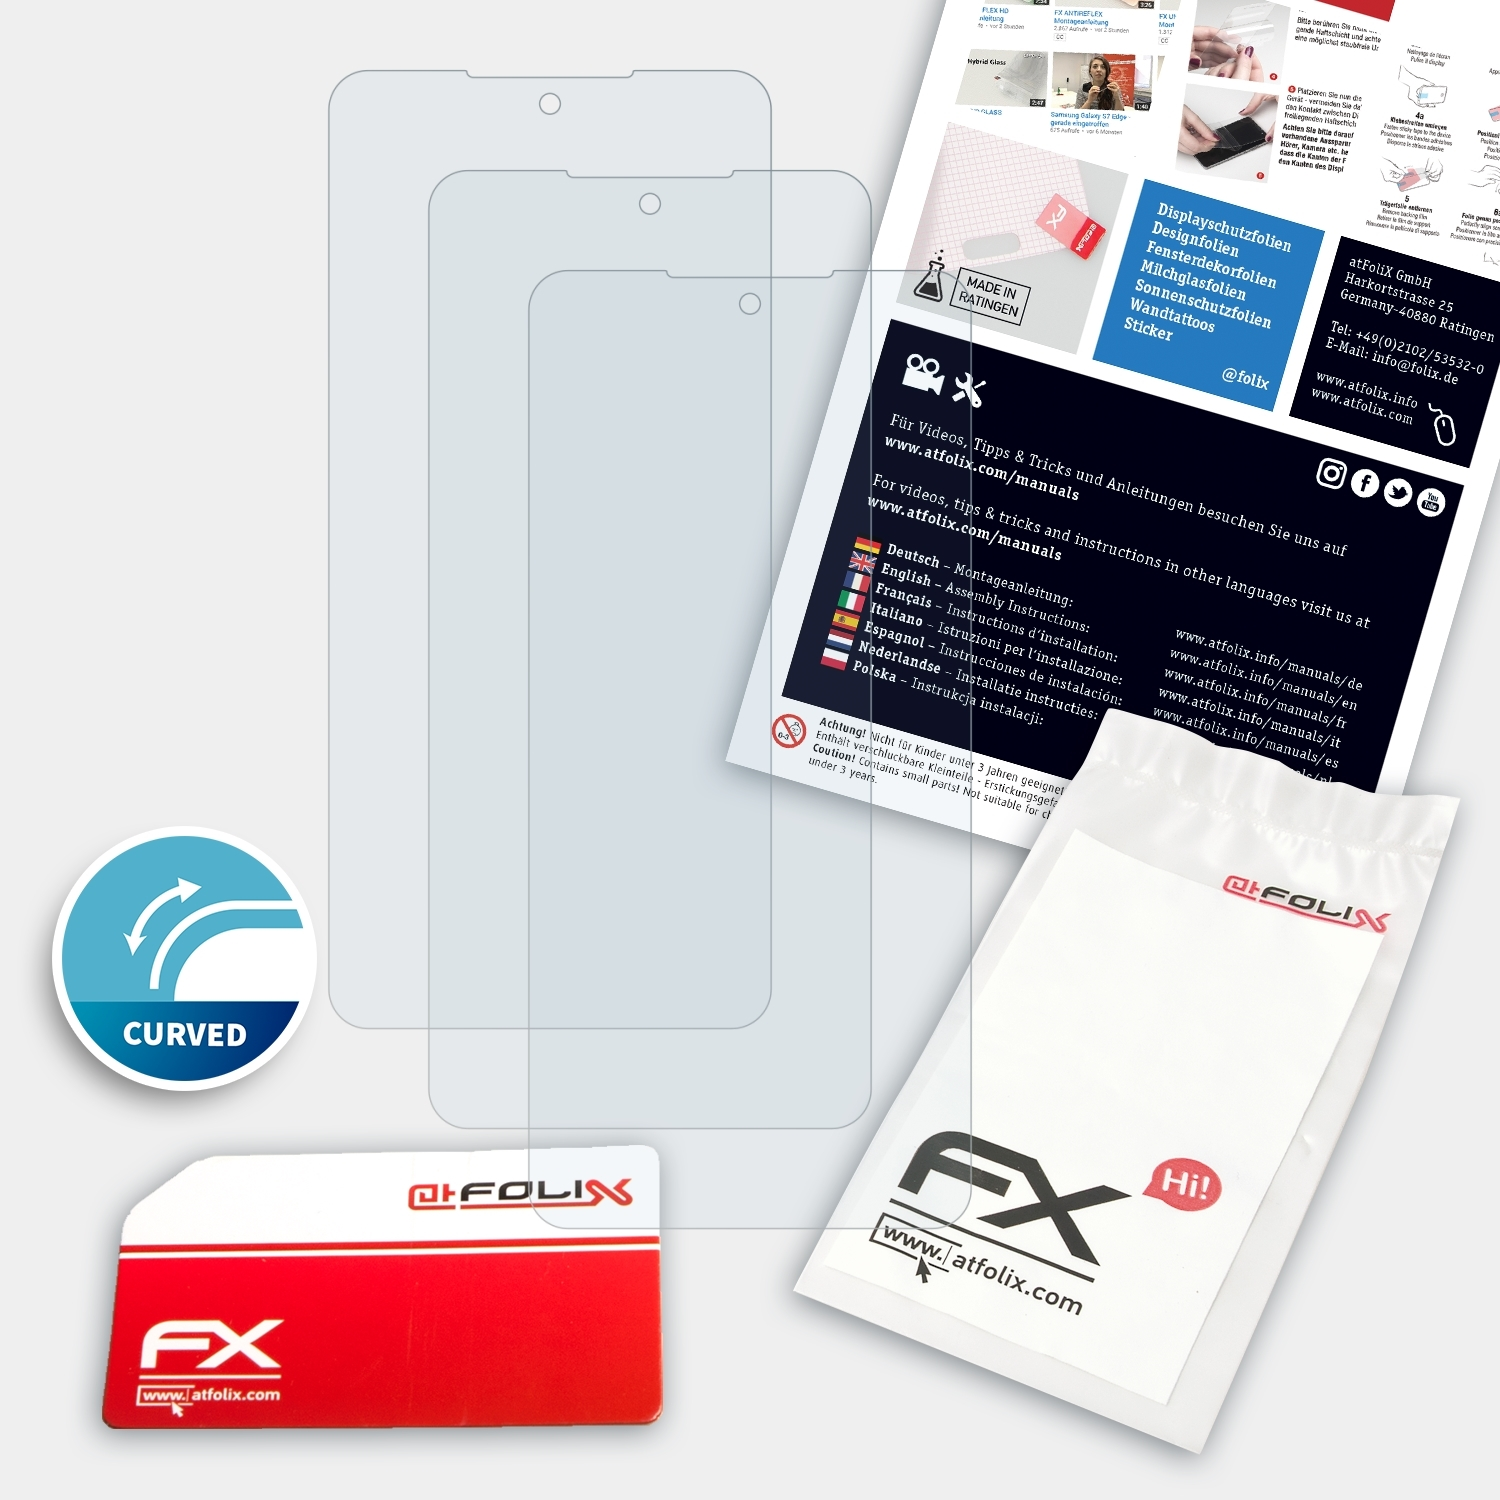 Xiaomi FX-ActiFleX Displayschutz(für ATFOLIX K40) 3x Redmi